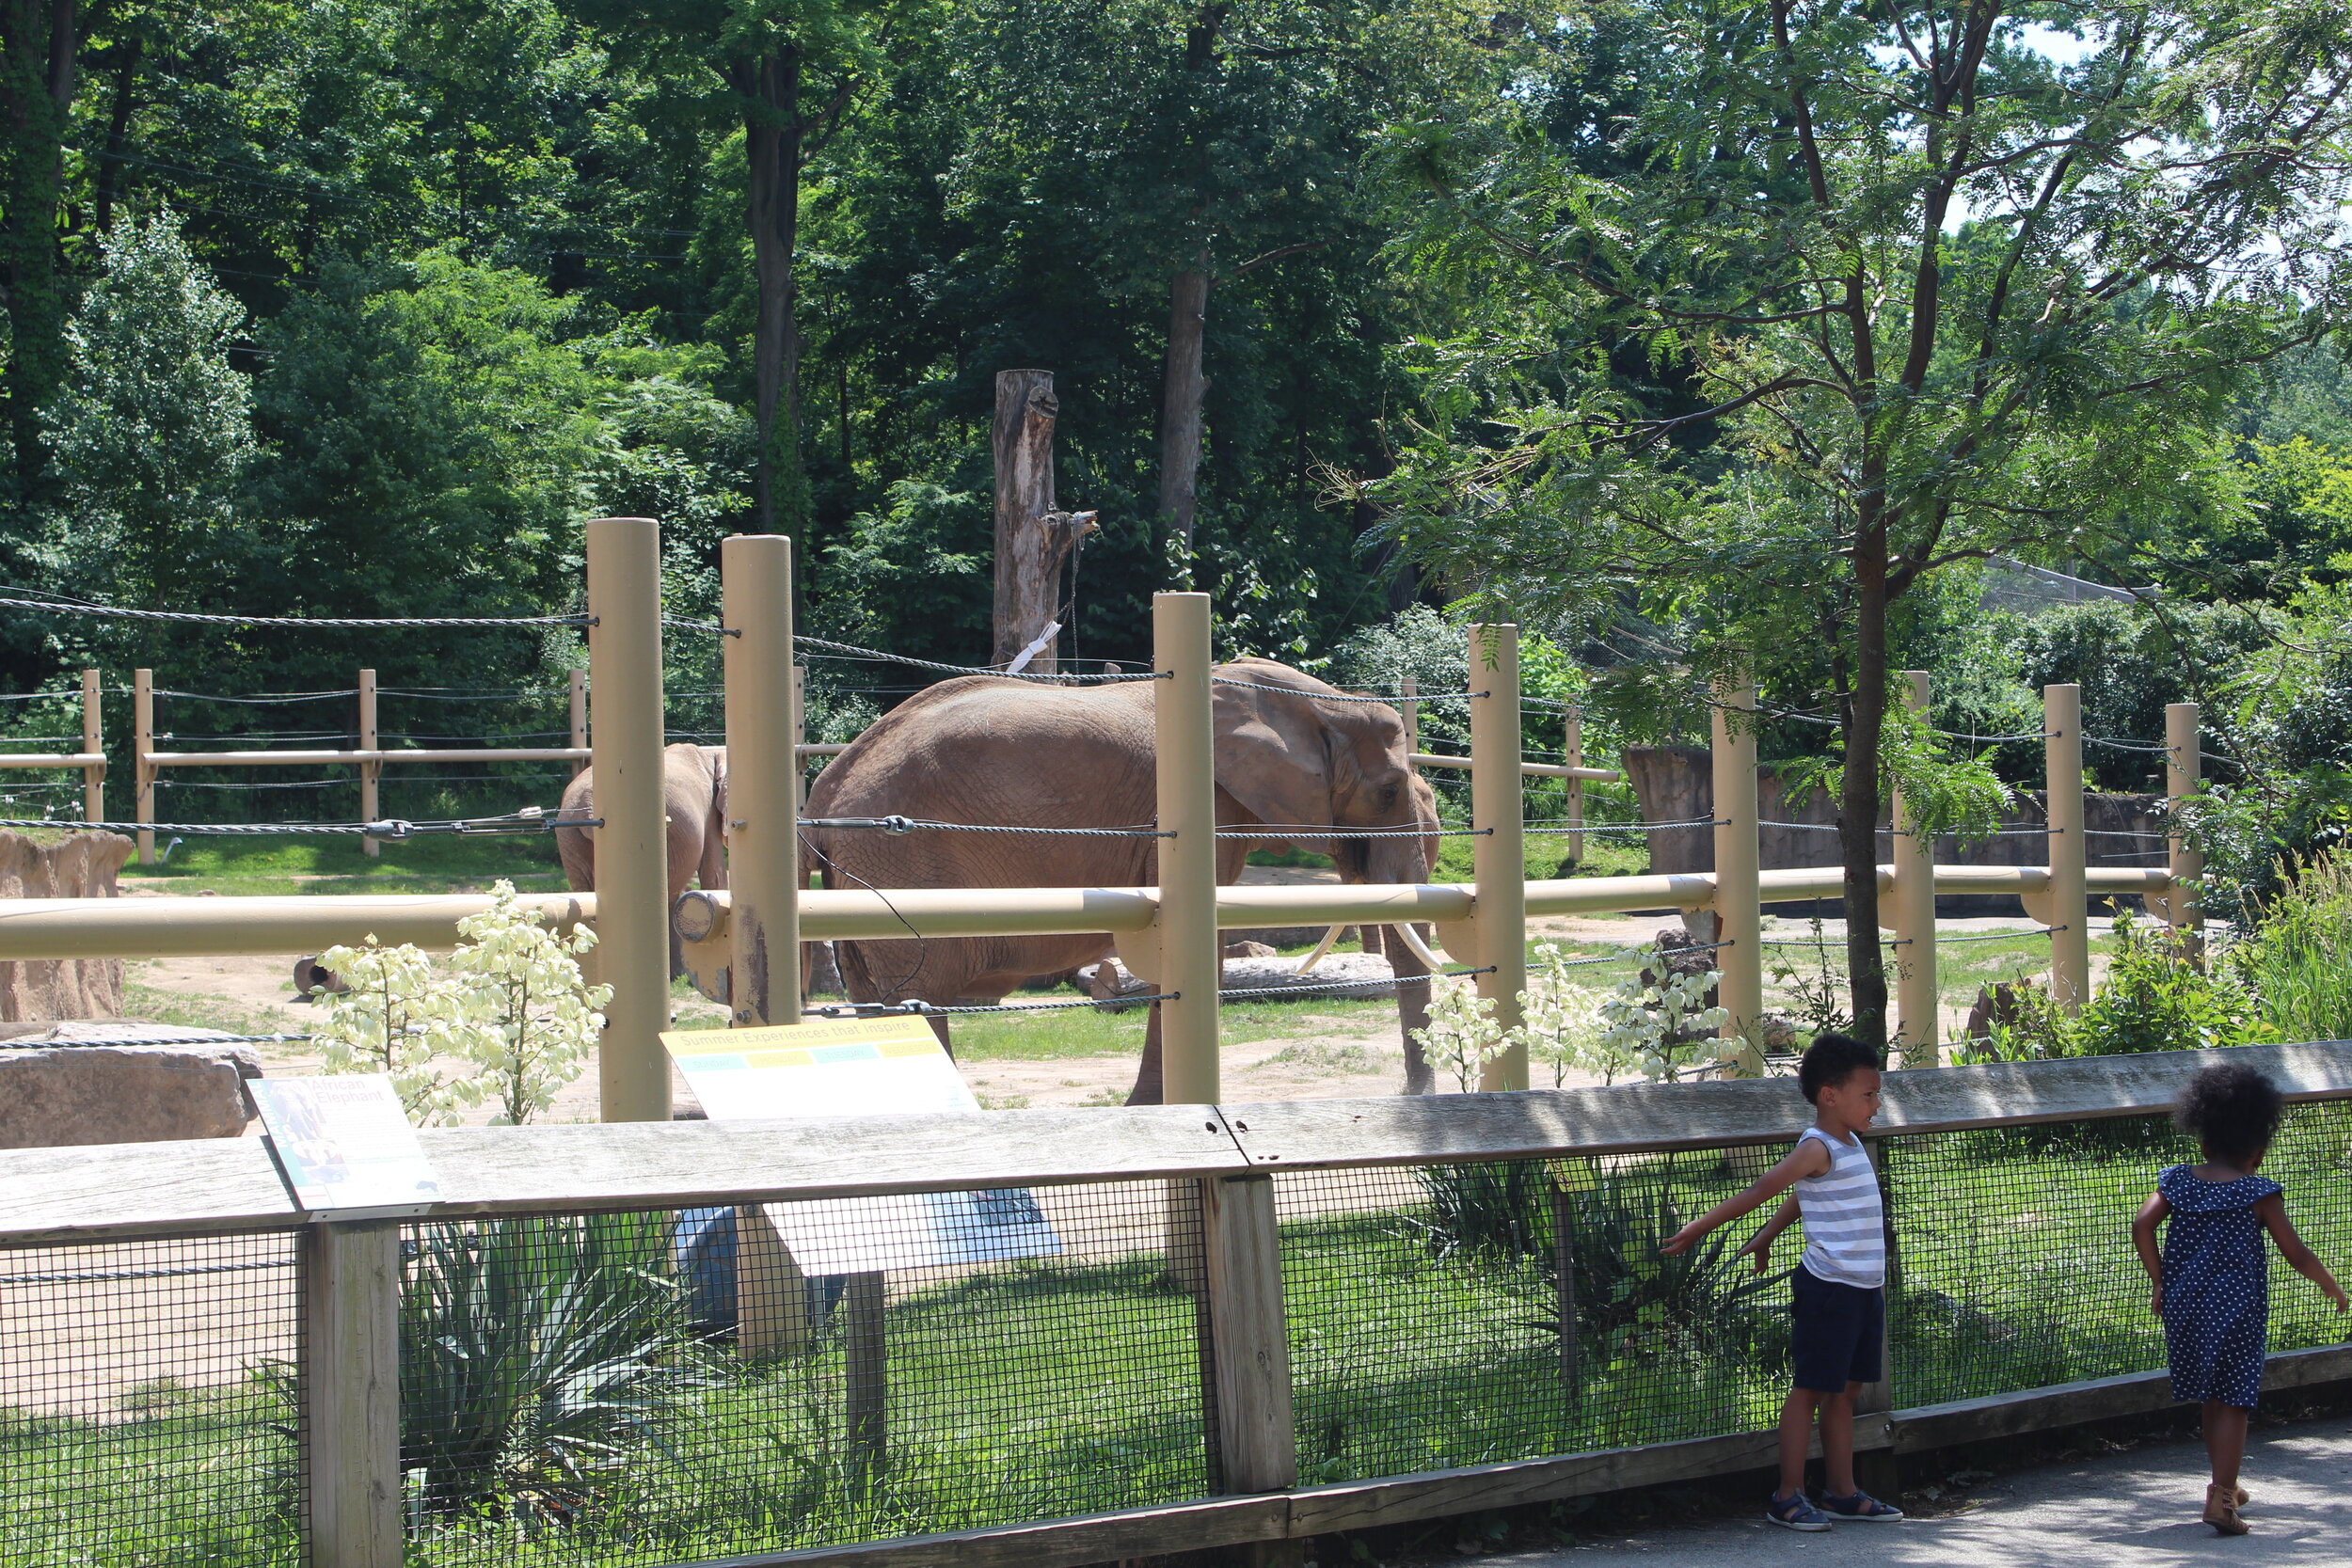  Basic elephant habitat 